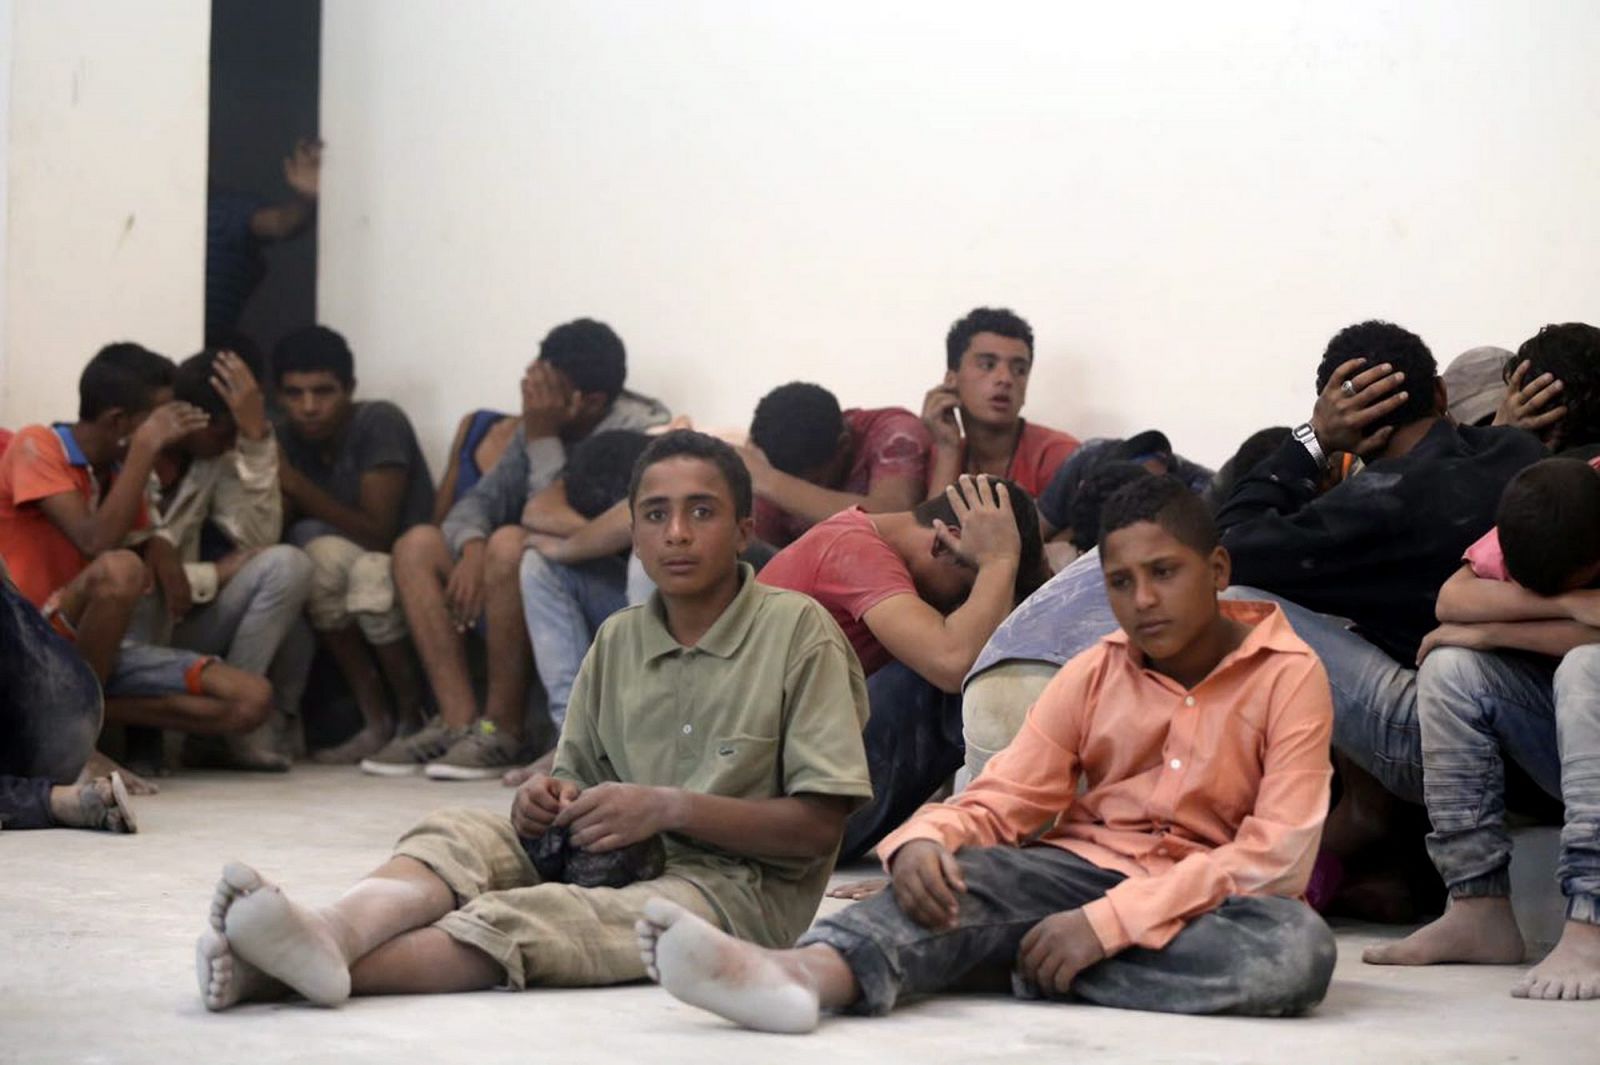 Los supervivientes del naufragio esperan en una estación de policía en Rosetta (Egipto).